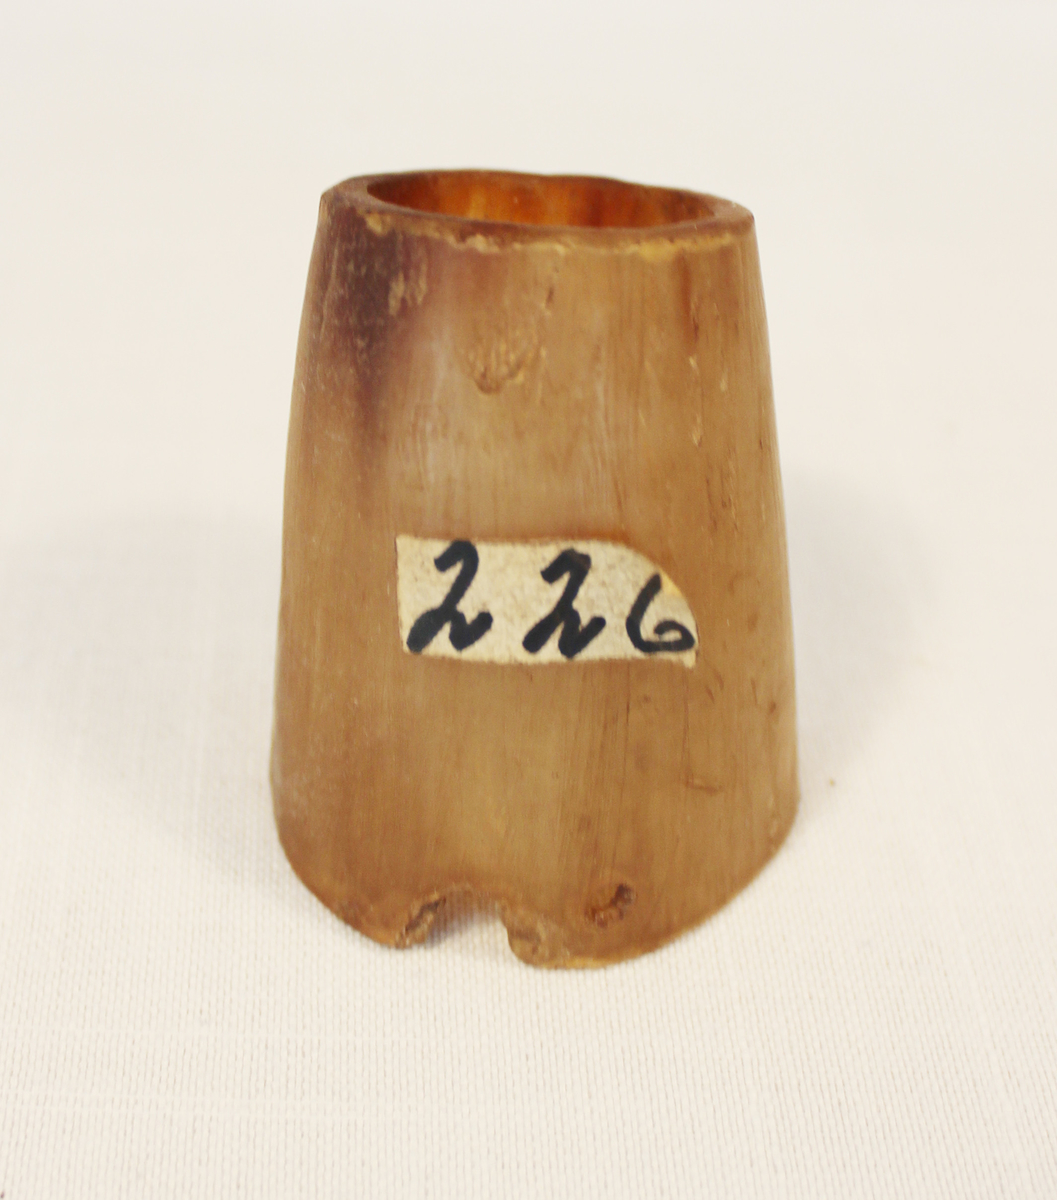 Pølsehorn til bruk ved stapping av pølser. Slike var i bruk før kjøttkvernens tid. 

Fra samlingen etter Ole Gjestvang. 